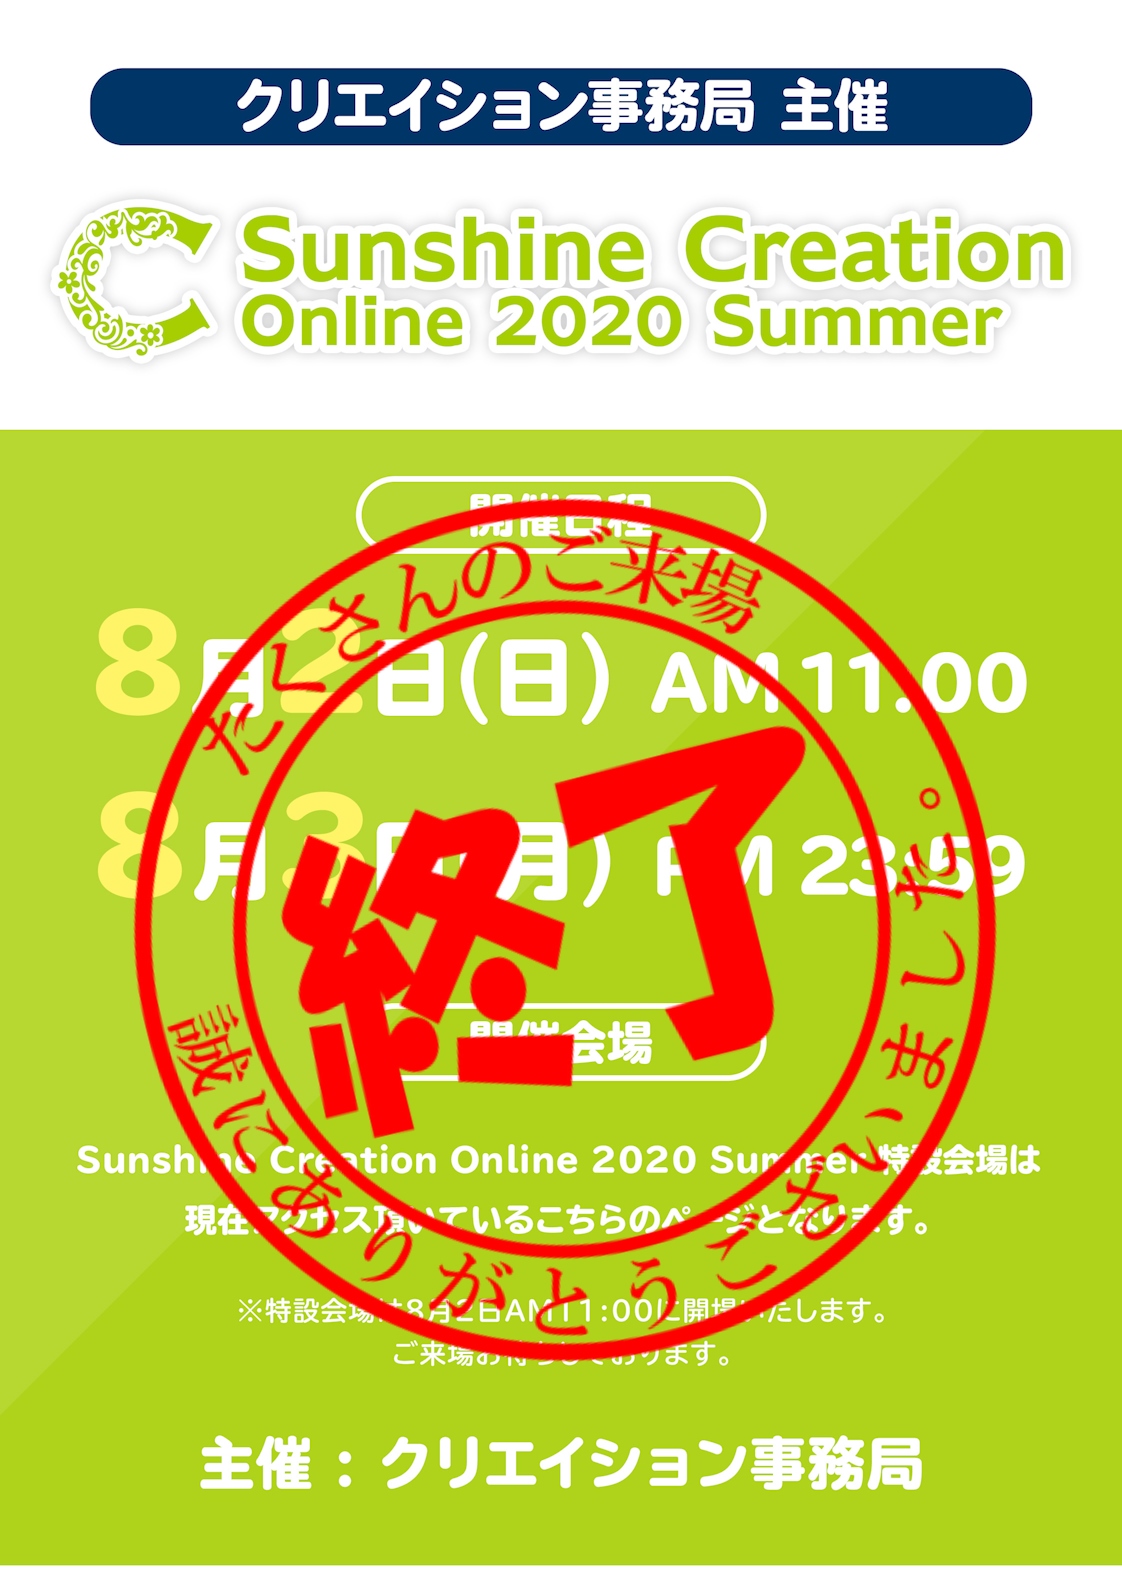 クリエイション事務局主催 Sunshine Creation Online 2020 Summer